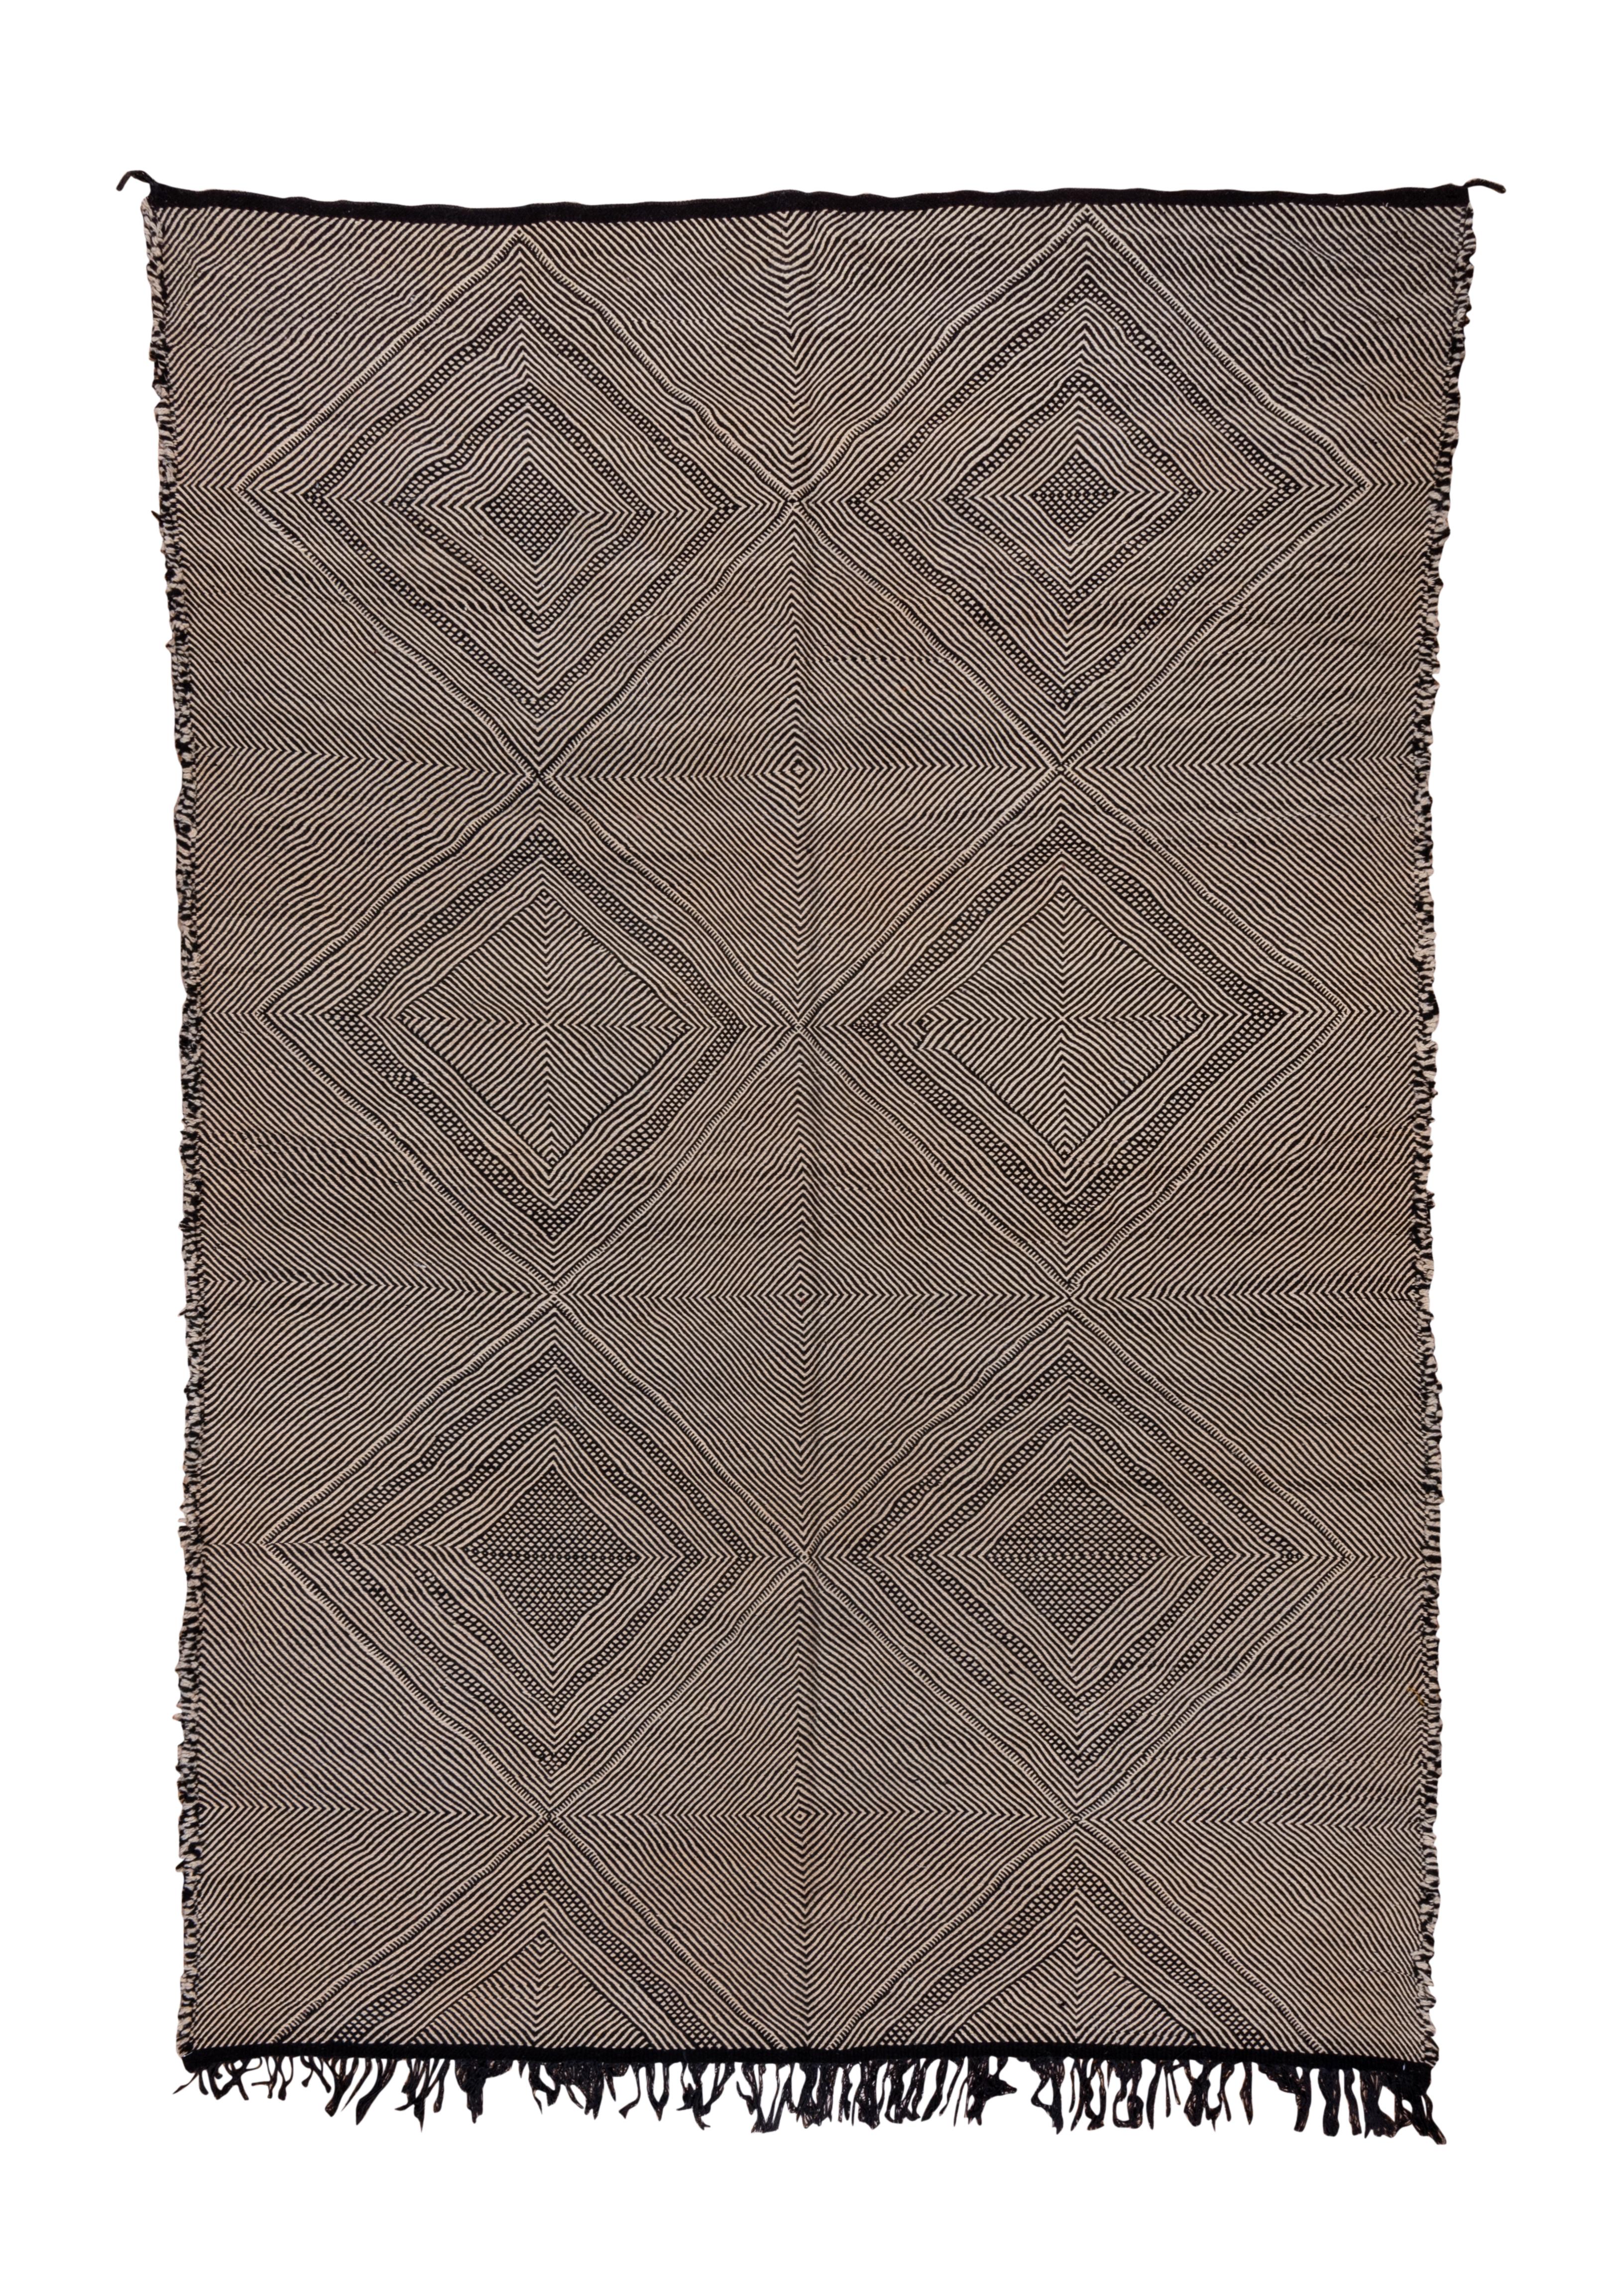 Tapis moderne tissé à la main à motif géométrique noir et blanc.
Fabriqué au Maroc Circa 1940's

Mesures du tapis
8x11'8